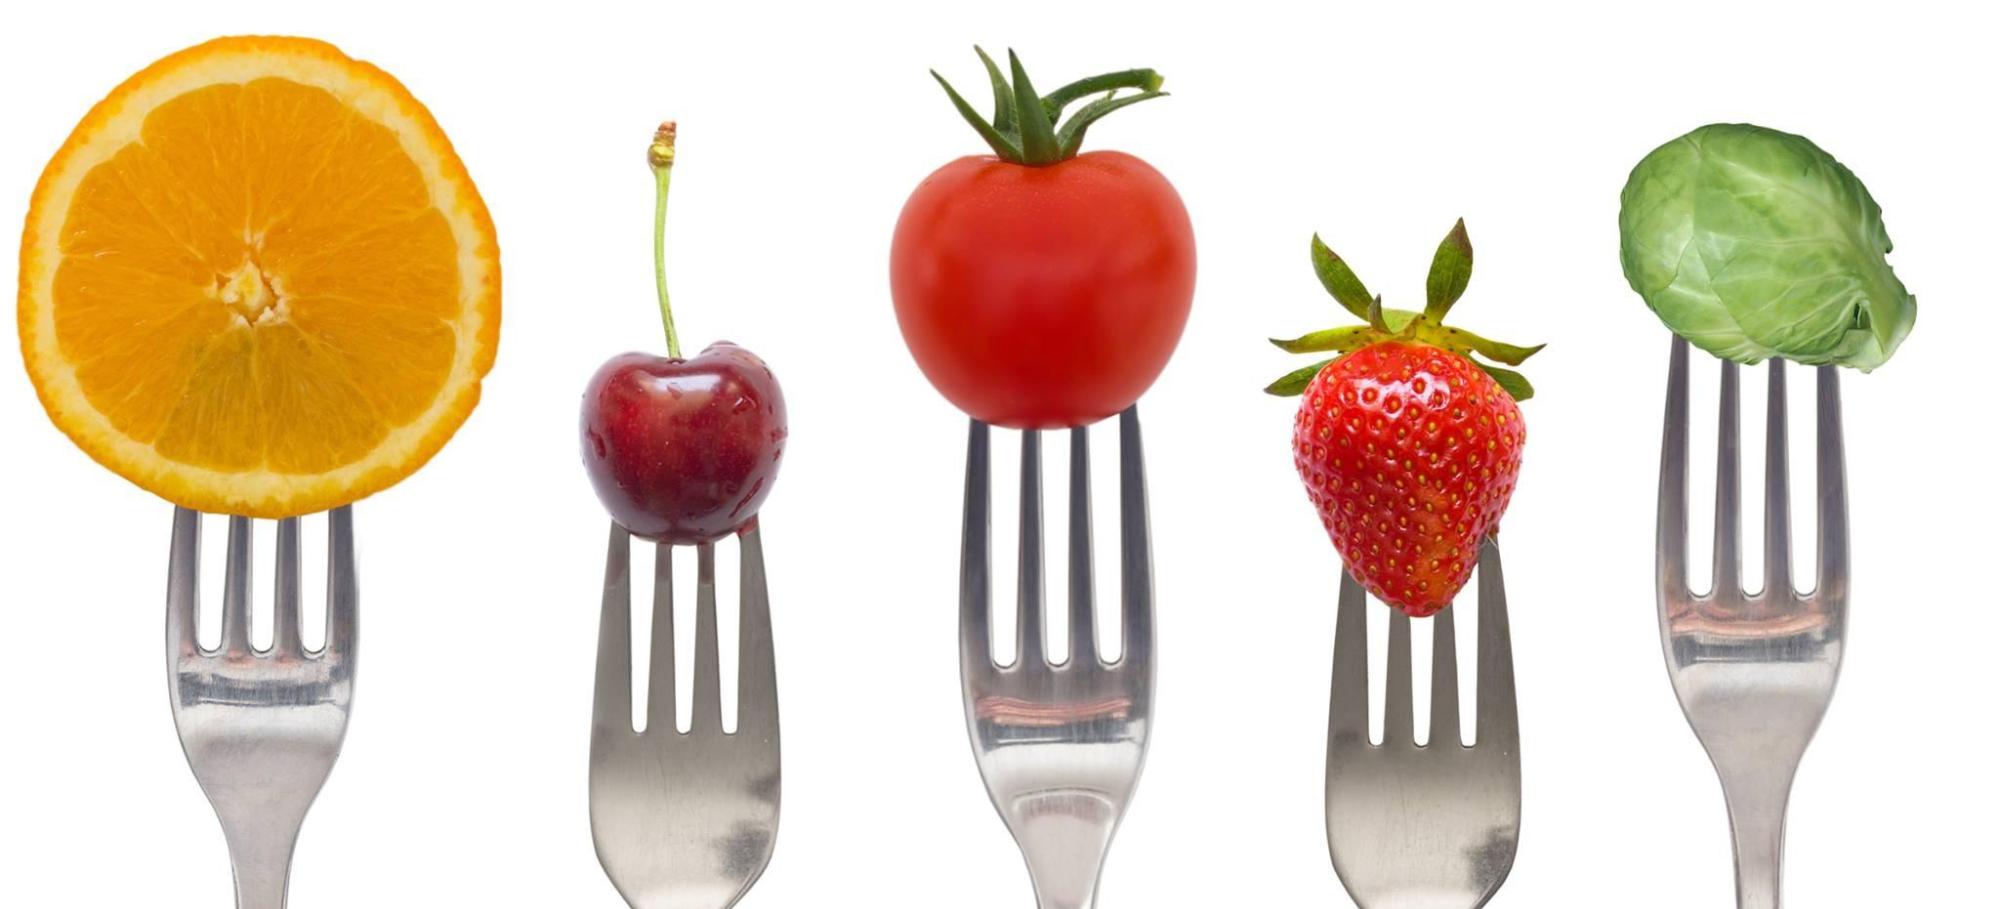 10 alimentos detox para incluir en tu dieta